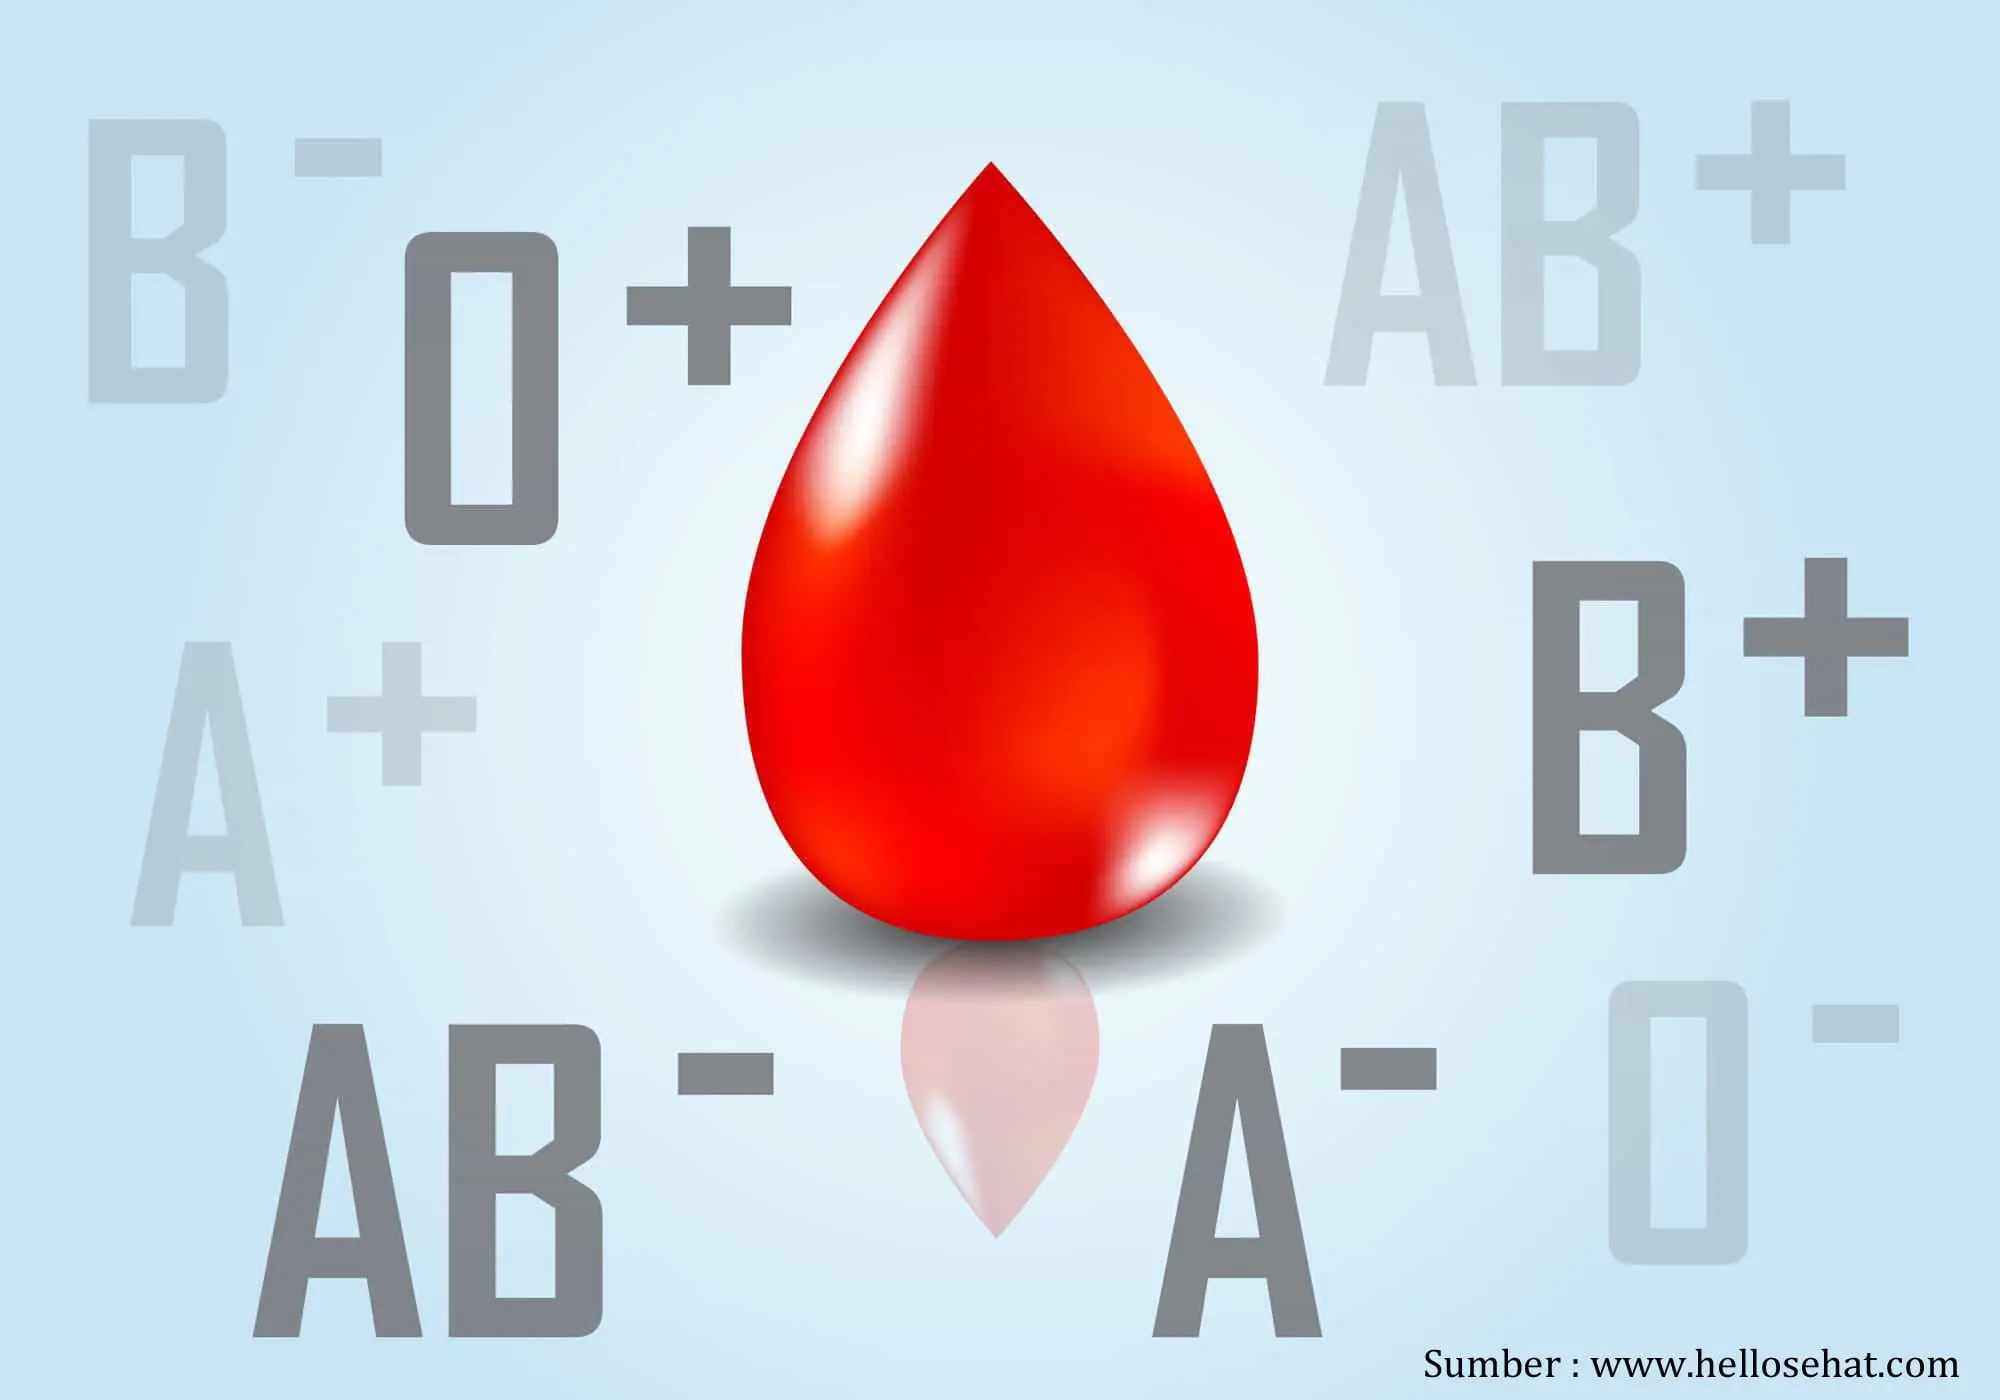 Mengetahui golongan darah dapat menyelamatkan nyawa seseorang